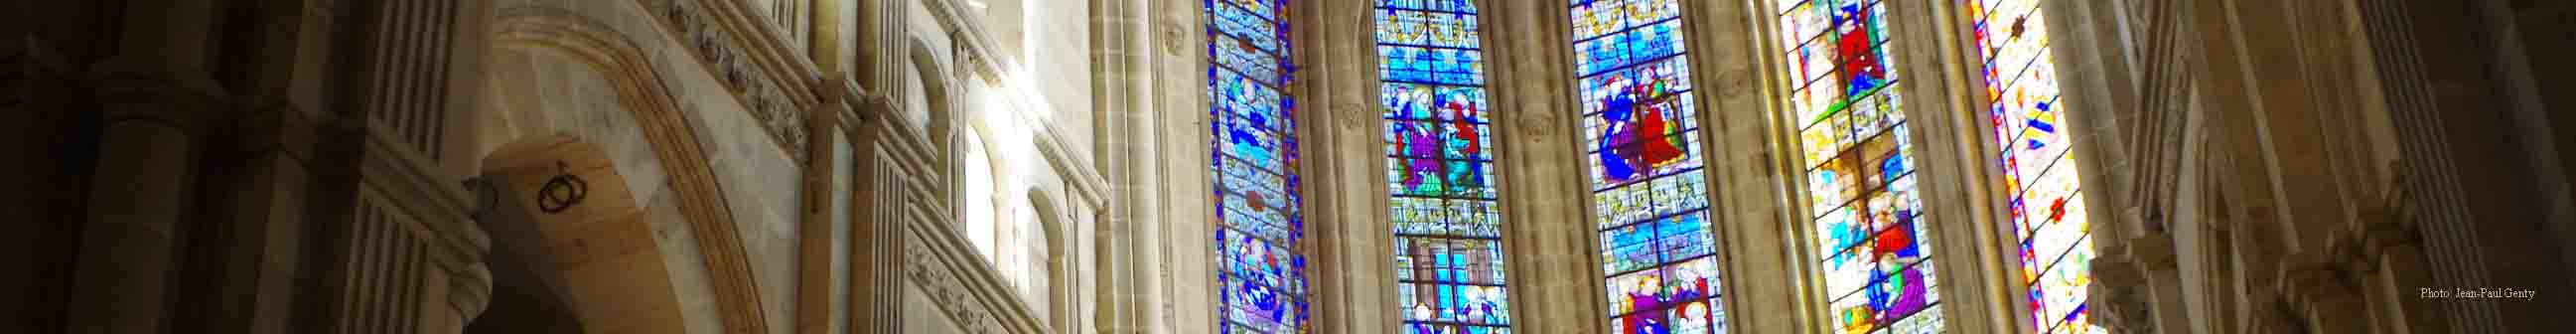 Choeur de la cathédrale d'Autun